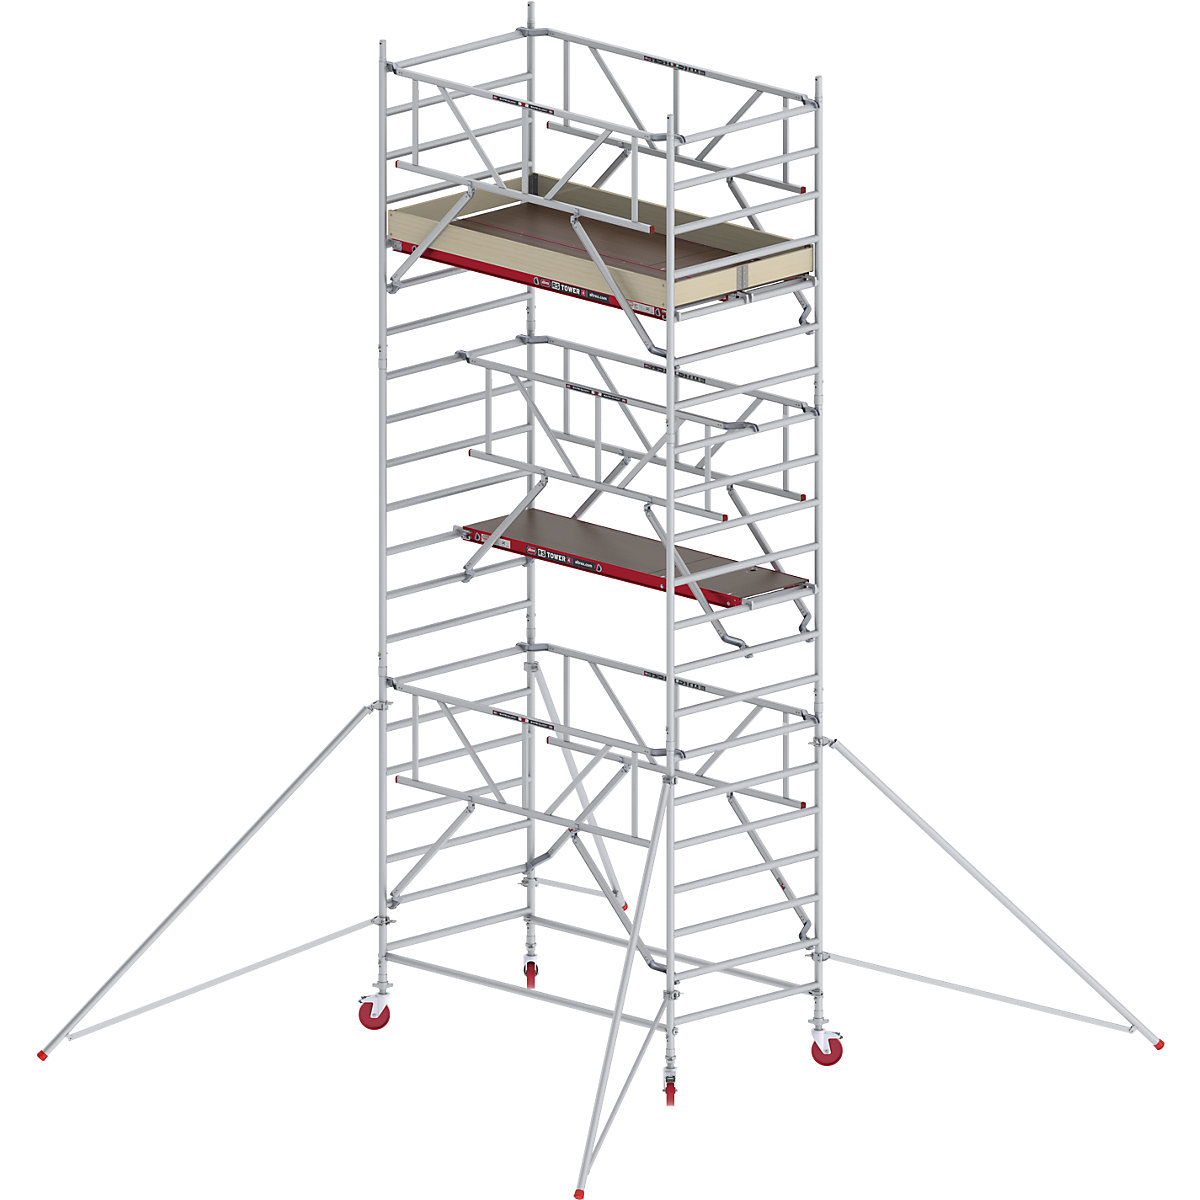 Fahrgerüst RS TOWER 42 breit mit Safe-Quick® Altrex, Holzplattform, Länge 2,45 m, Arbeitshöhe 7,20 m